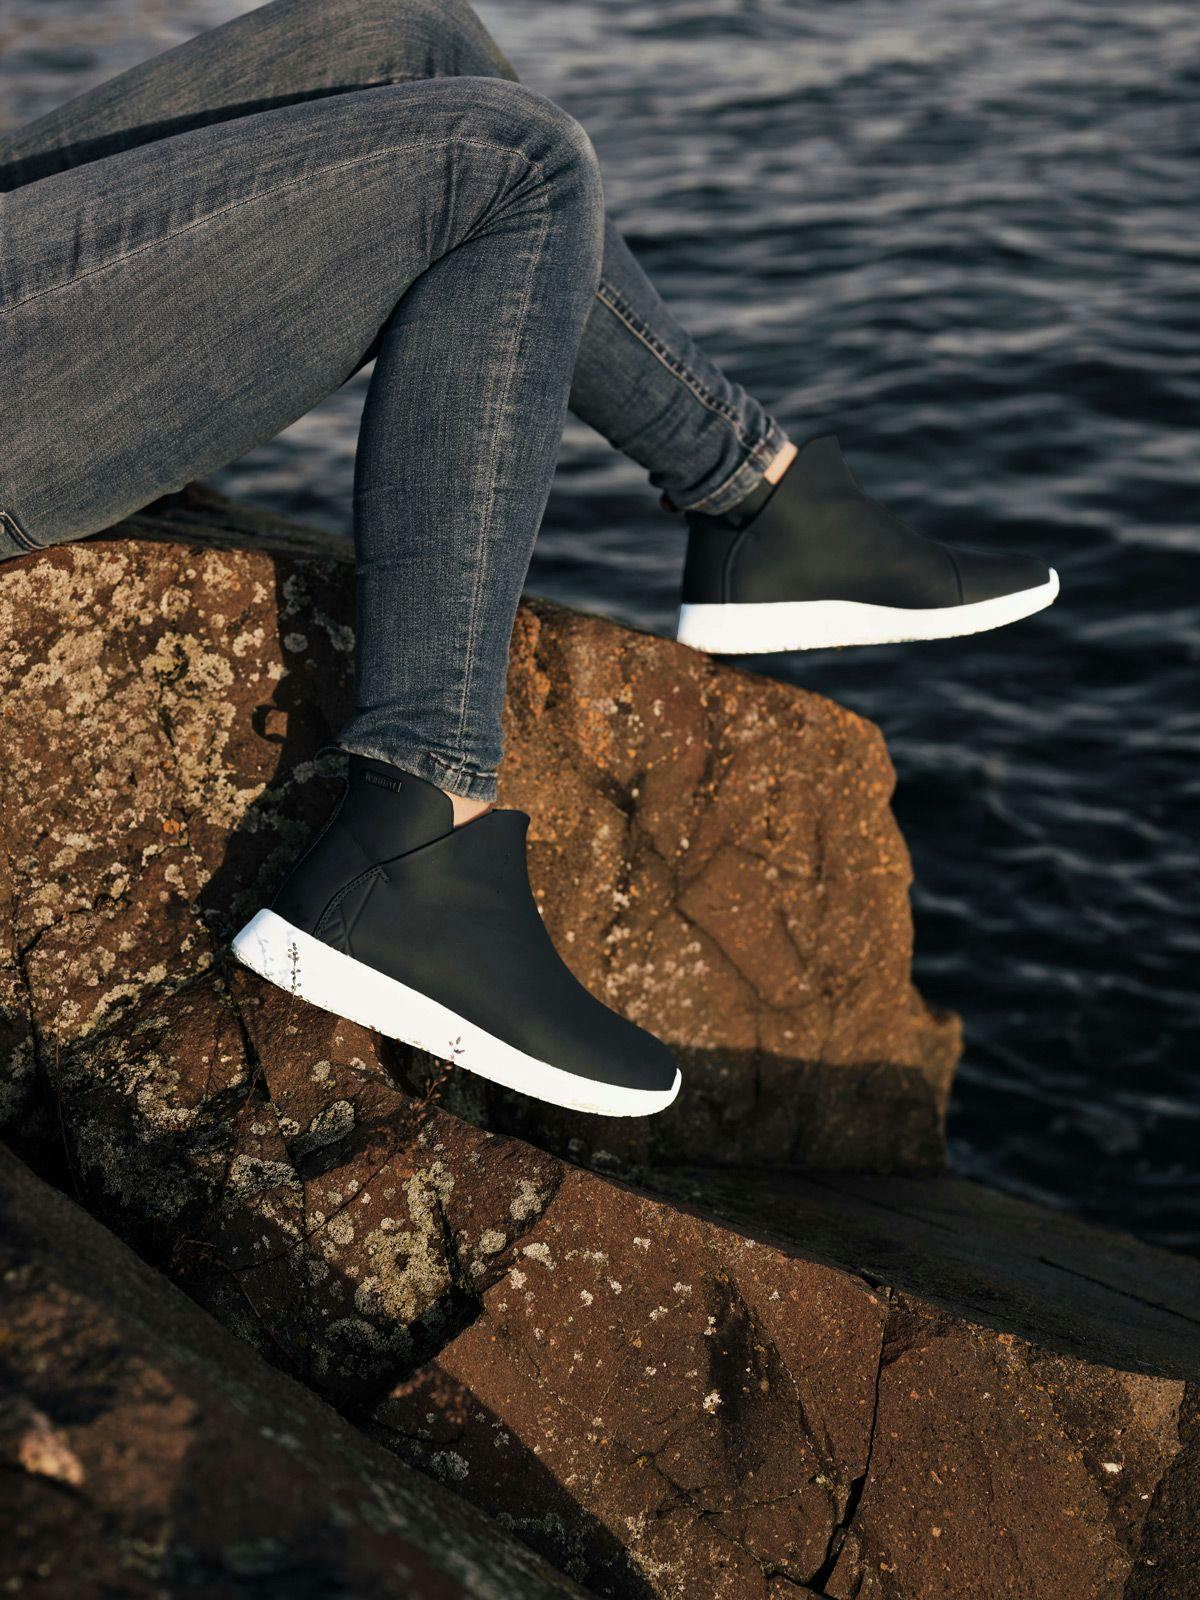 Røros Classic støvletter moderniserer den tradisjonelle gummistøvelen, ved å kombinere hverdagskomfort med vanntett PU og en klassisk sneaker-såle.